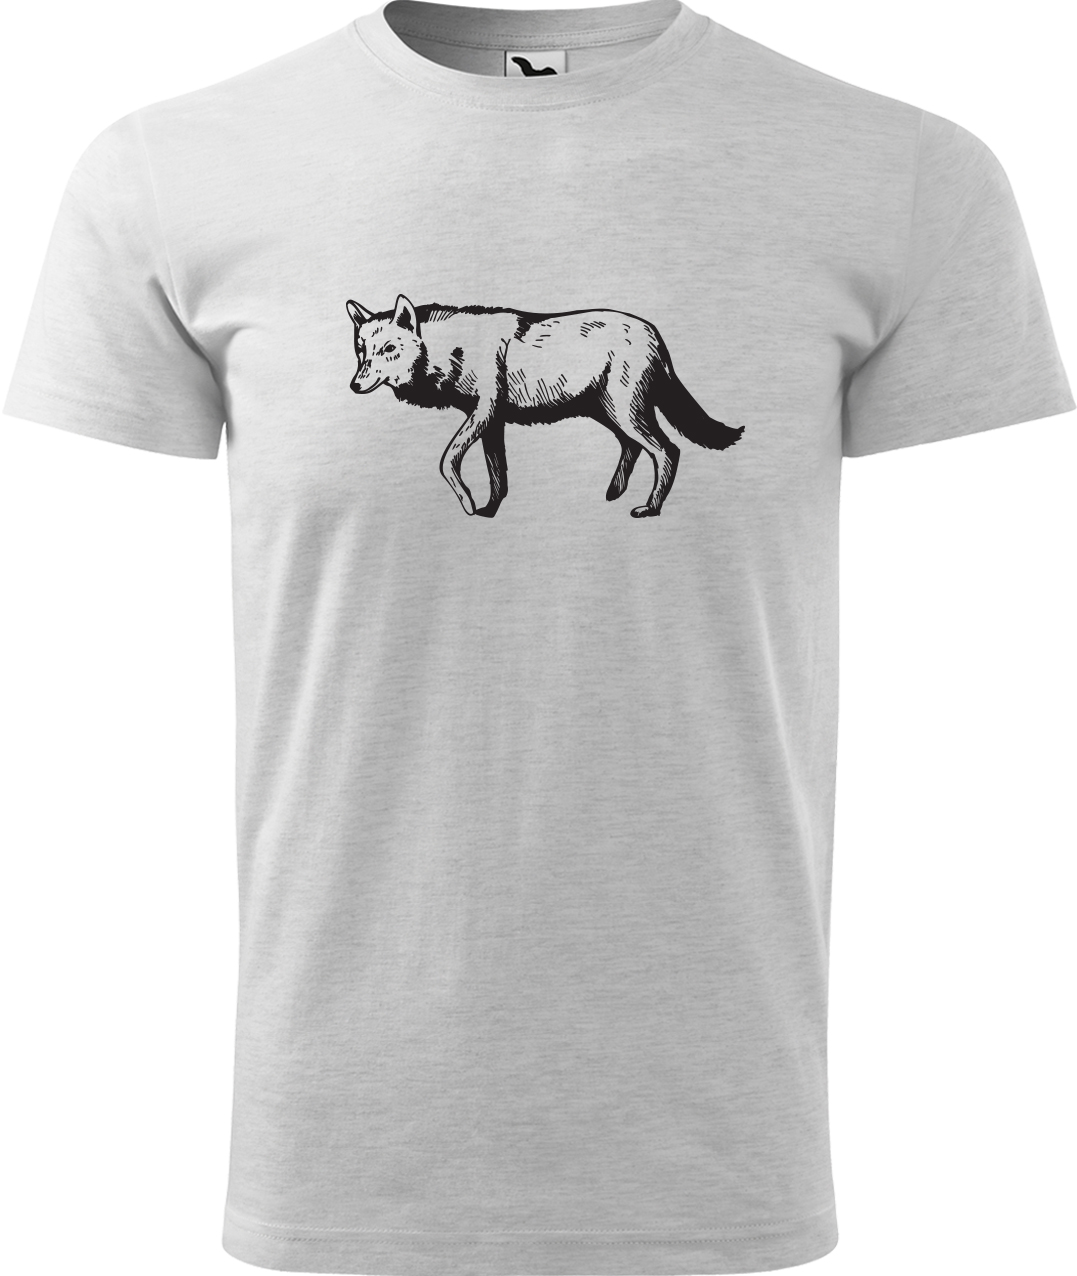 Pánské tričko s vlkem - Vlk Velikost: L, Barva: Světle šedý melír (03), Střih: pánský